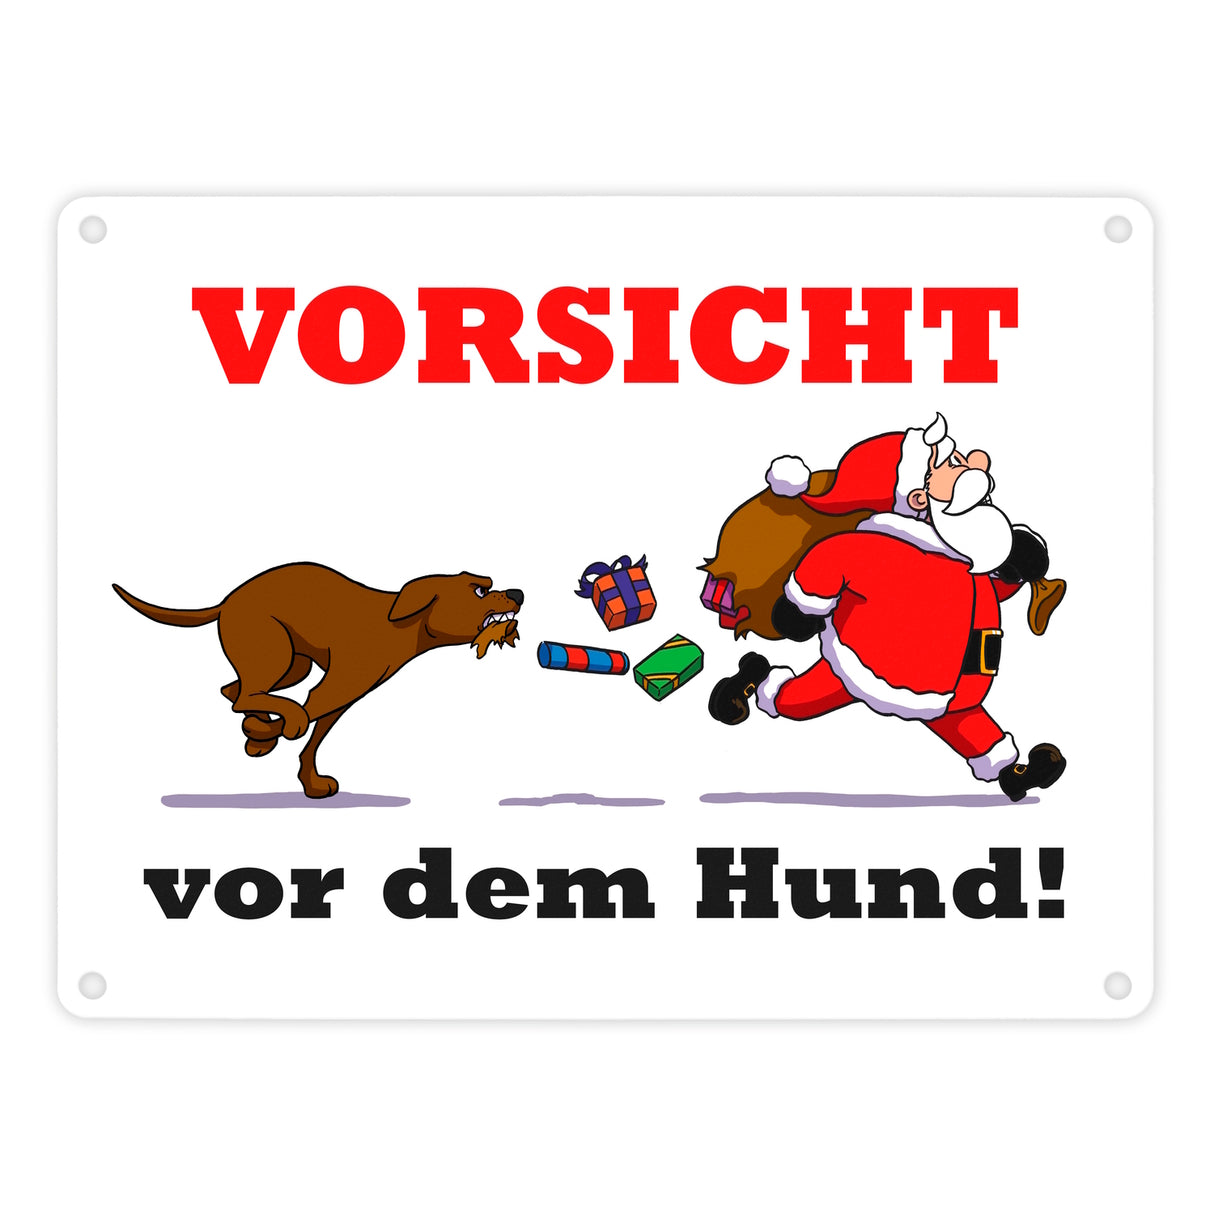 Metallschild mit Spruch und Weihnachtsmotiv - Vorsicht vor dem Hund!